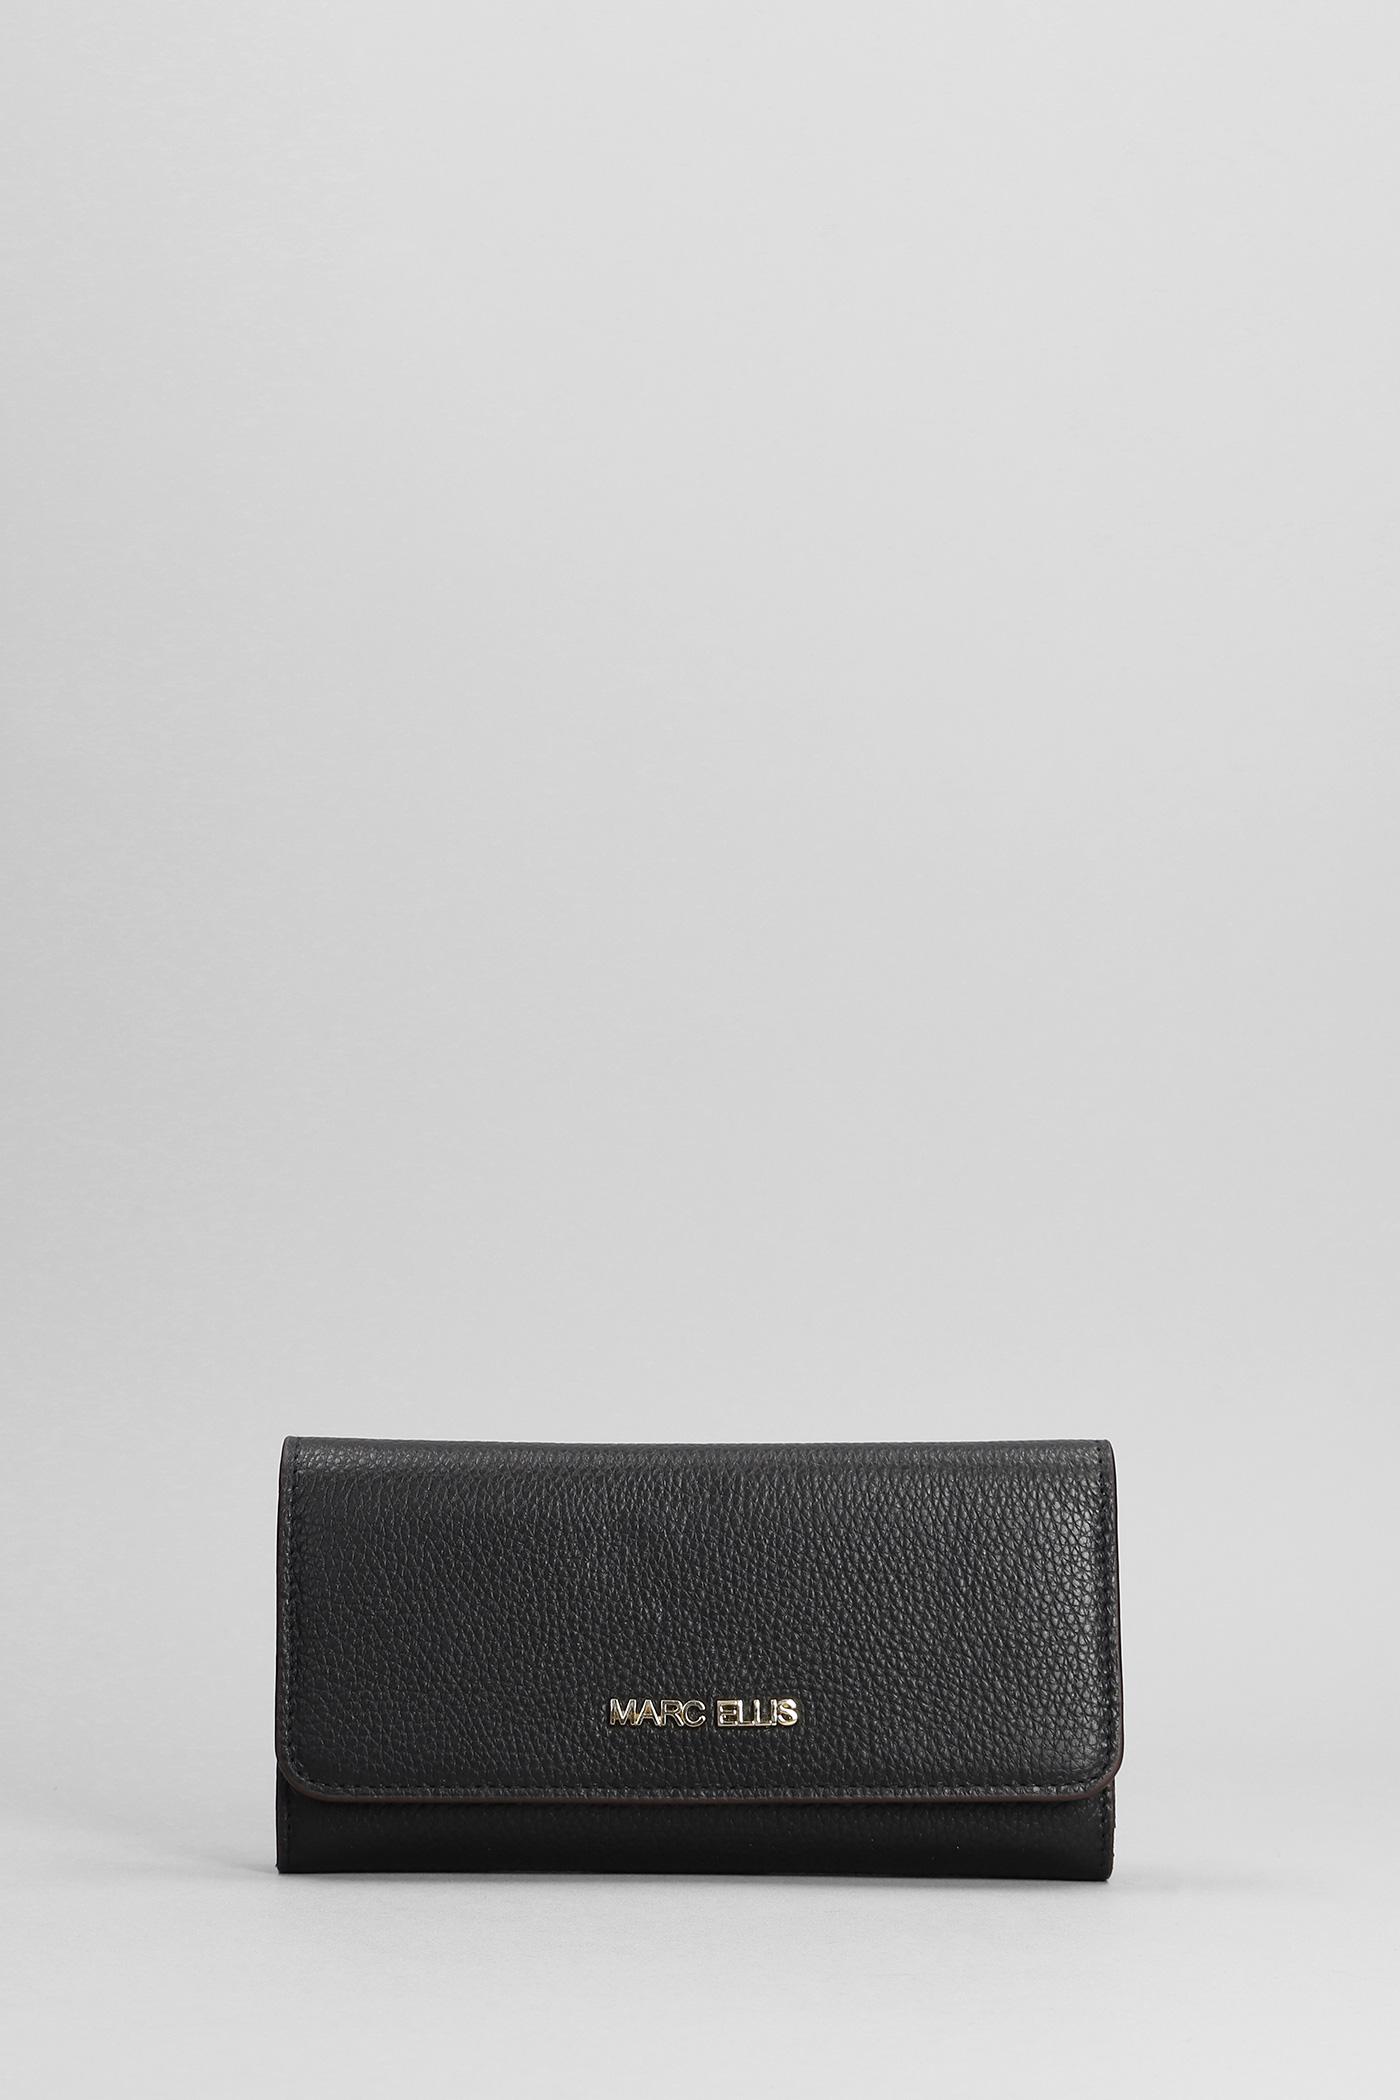 Marc Ellis Ariel Wallet In Black Faux Leather in Gray | Lyst